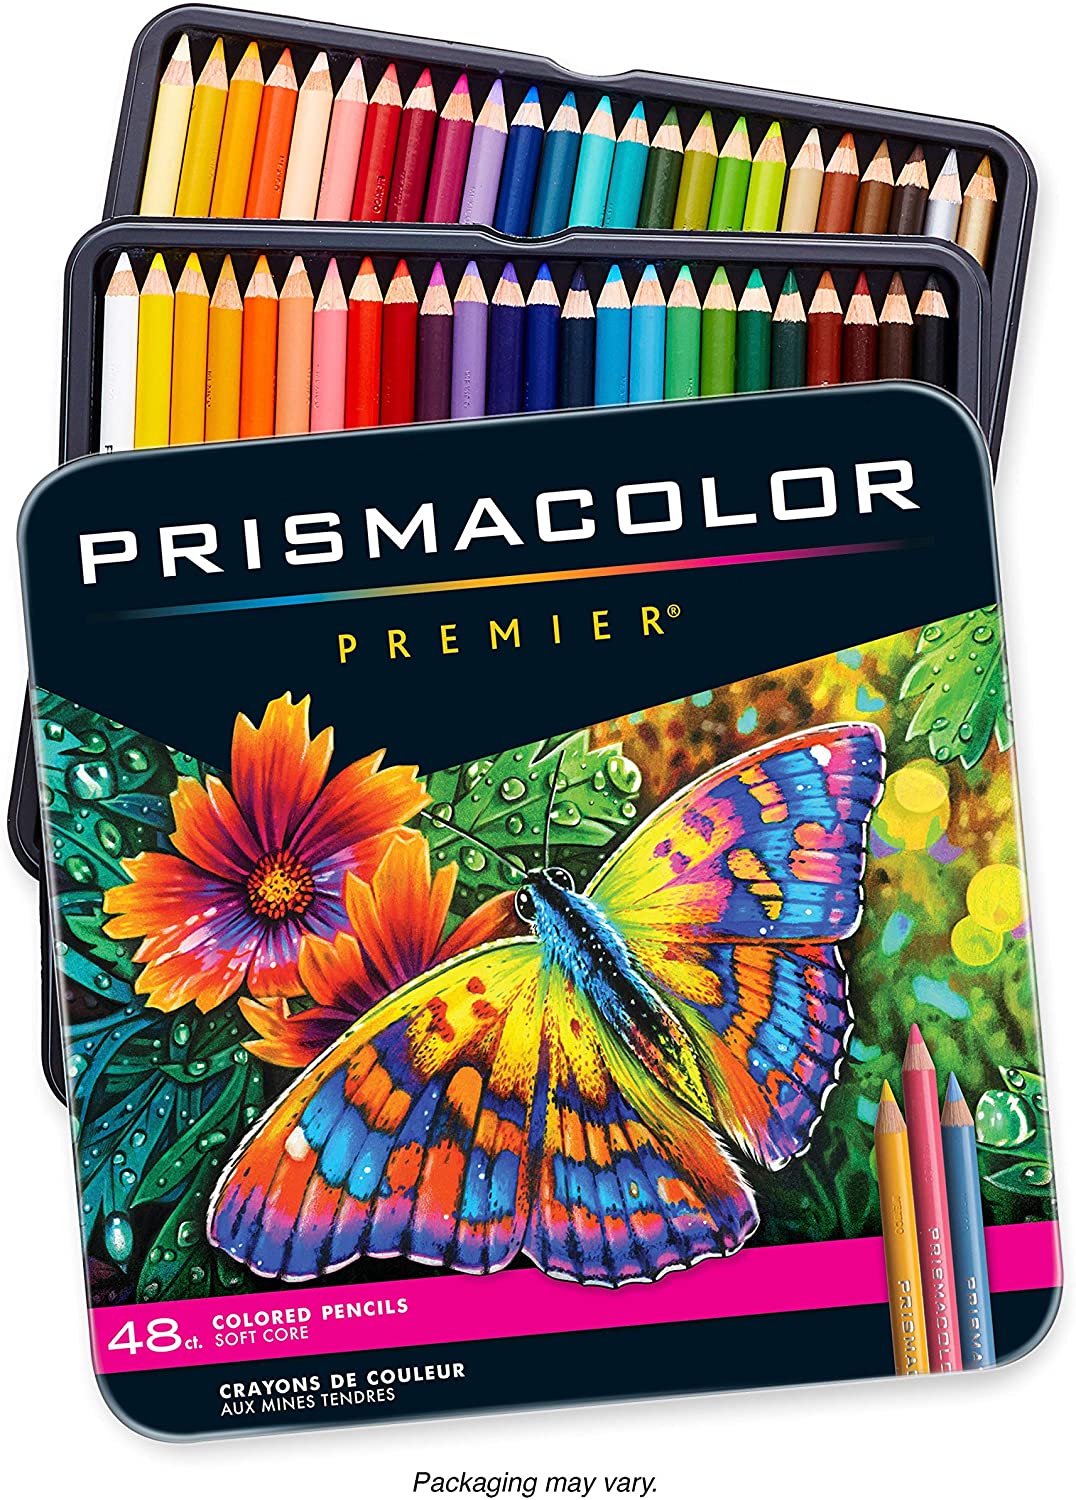 Prismacolor Combinacao De Cores Dos Lapis Prismacolor Premier Images